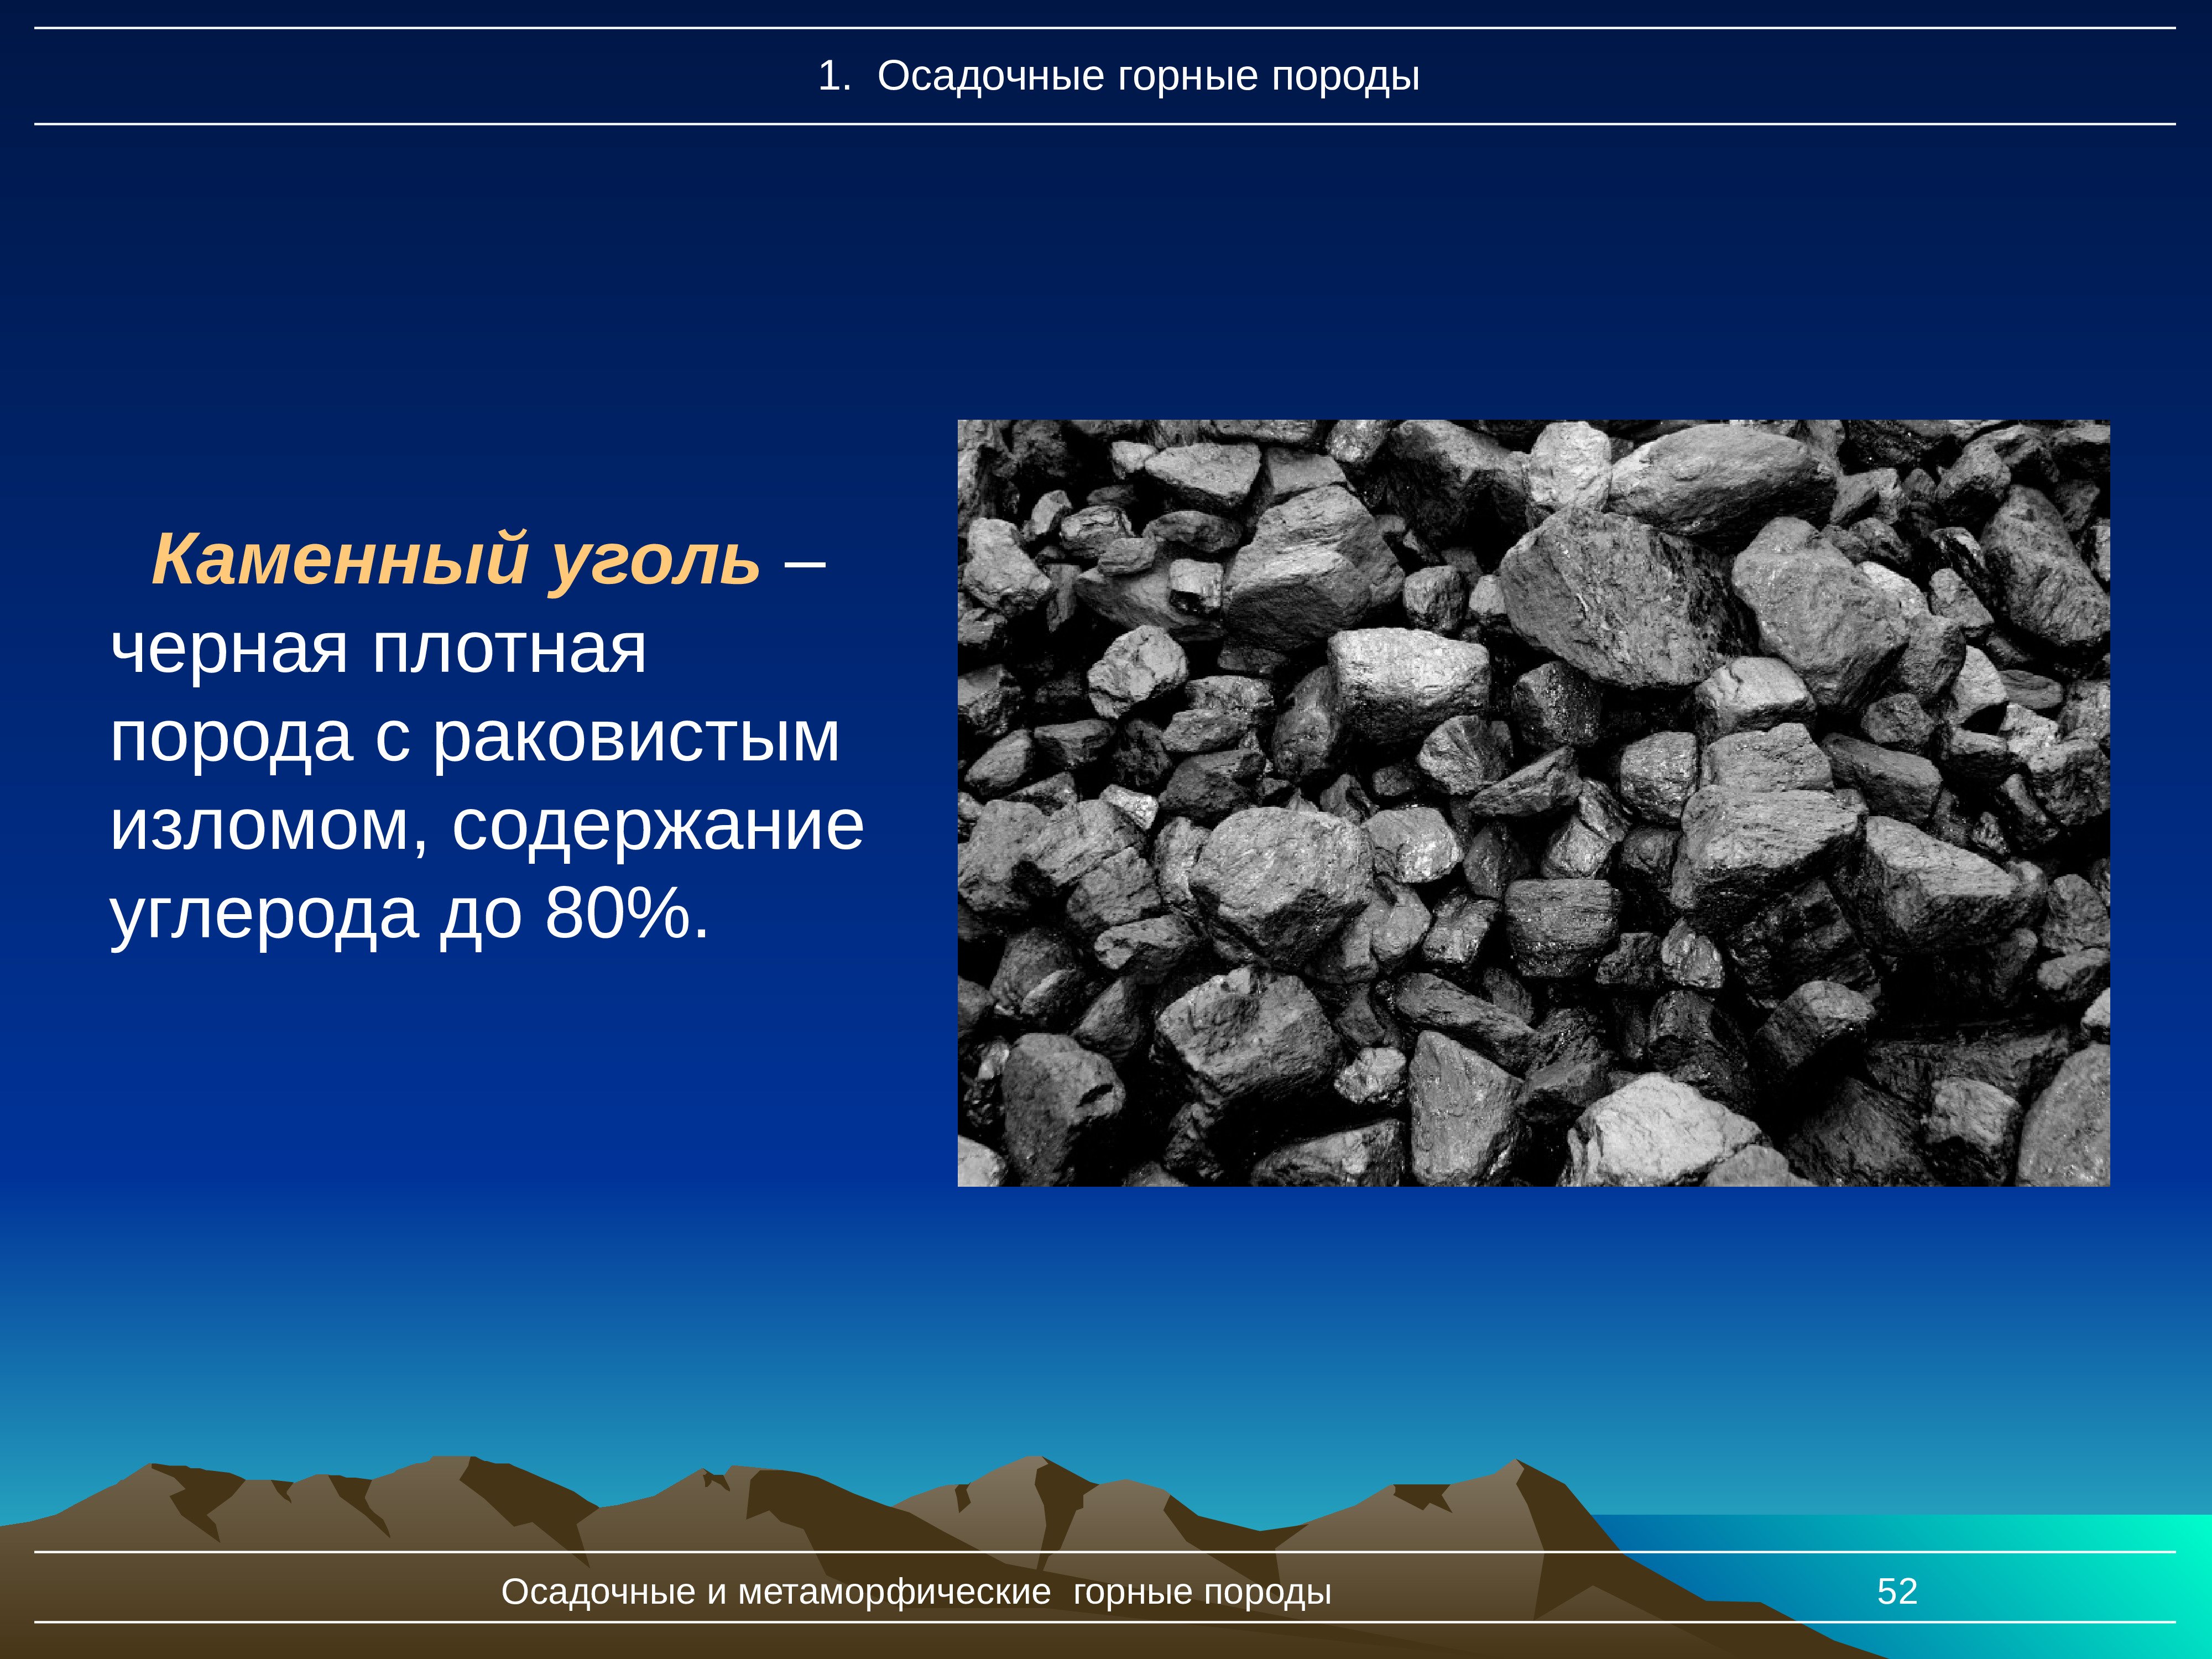 Появление каменного угля. Каменный уголь осадочные горные породы. Уголь Горная порода. Каменный уголь. Осадочные и метаморфические горные породы.